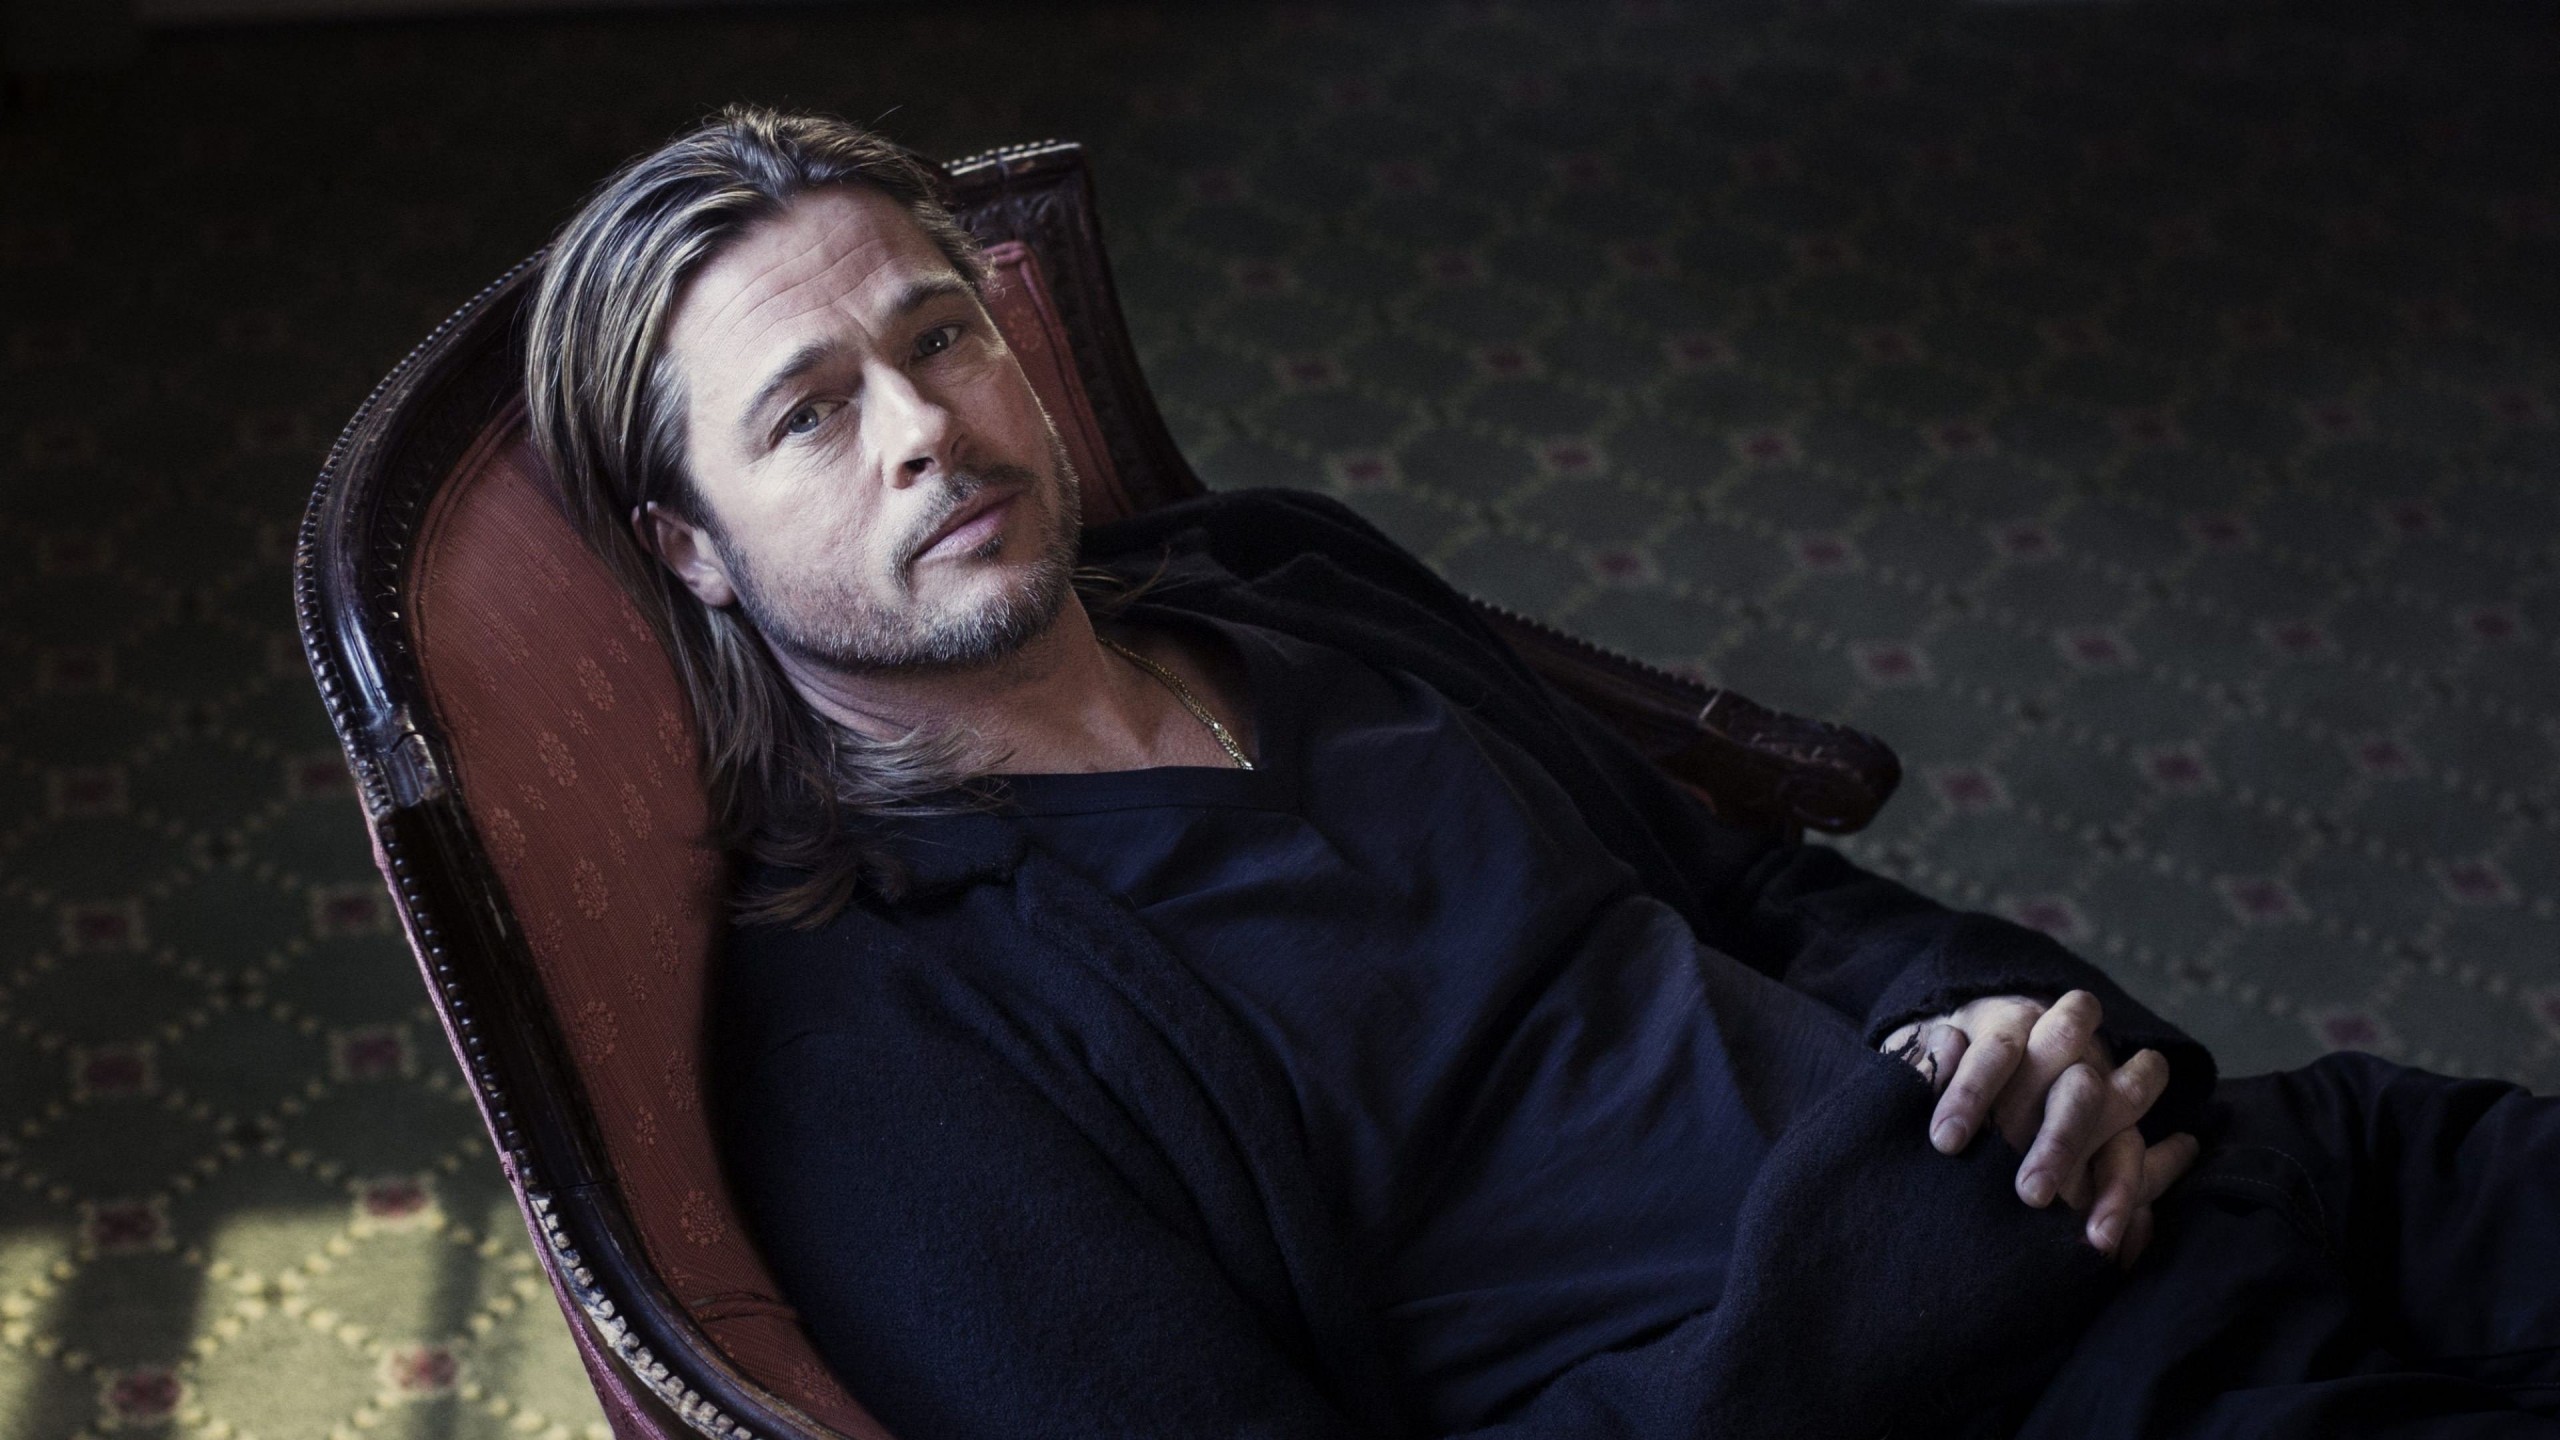 Brad Pitt Sitting On Chair Wallpaper for Desktop 2560x1440